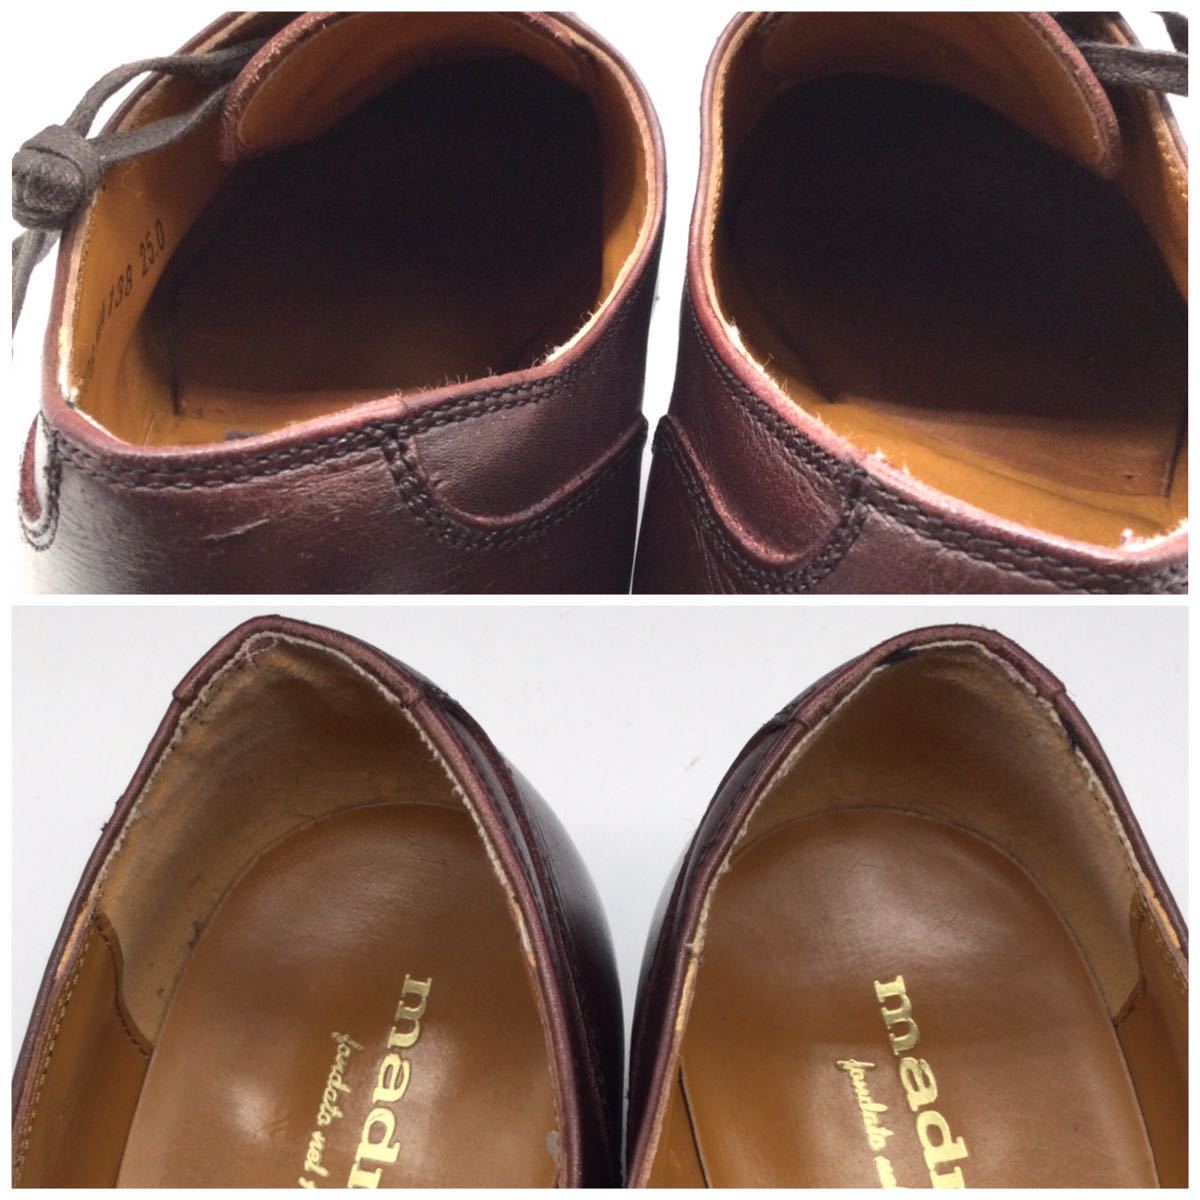 madras マドラス ドレスシューズ キャップトゥ ストレートチップ ビジネスシューズ レザー ブラウン 茶 25cm 革靴 日本製 